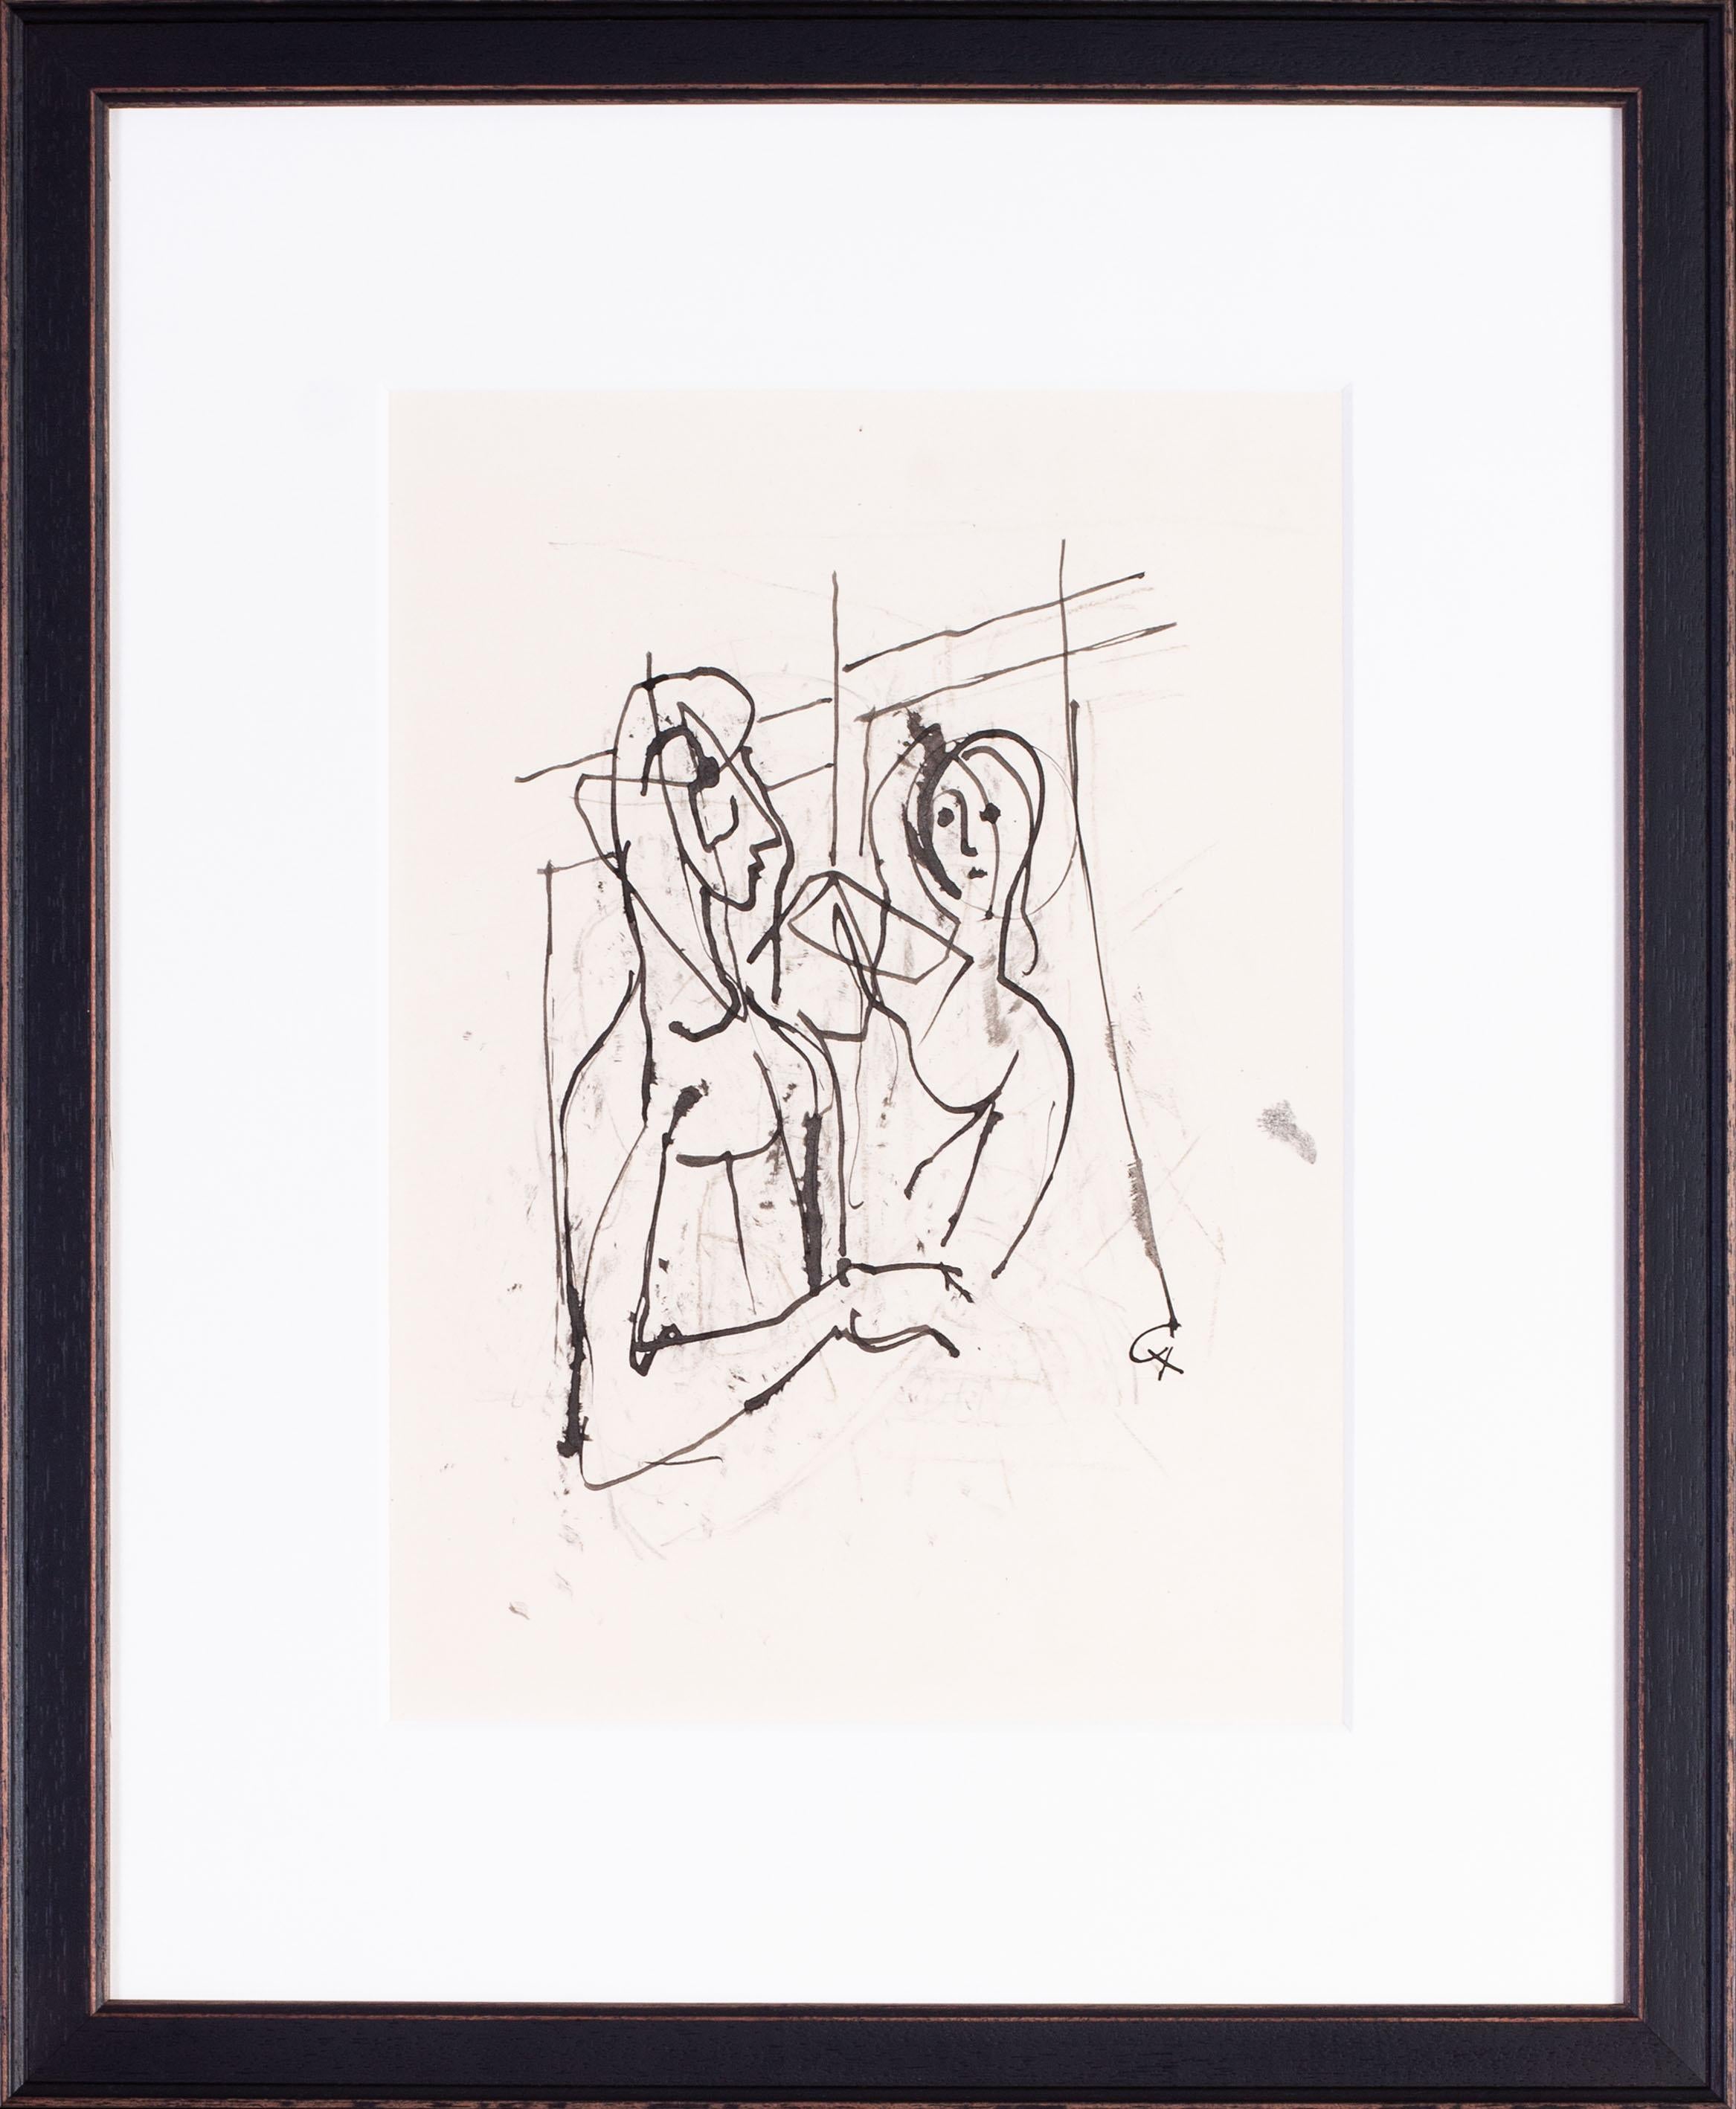 dessin expressionniste allemand de Carl Hofer représentant un couple d'amants